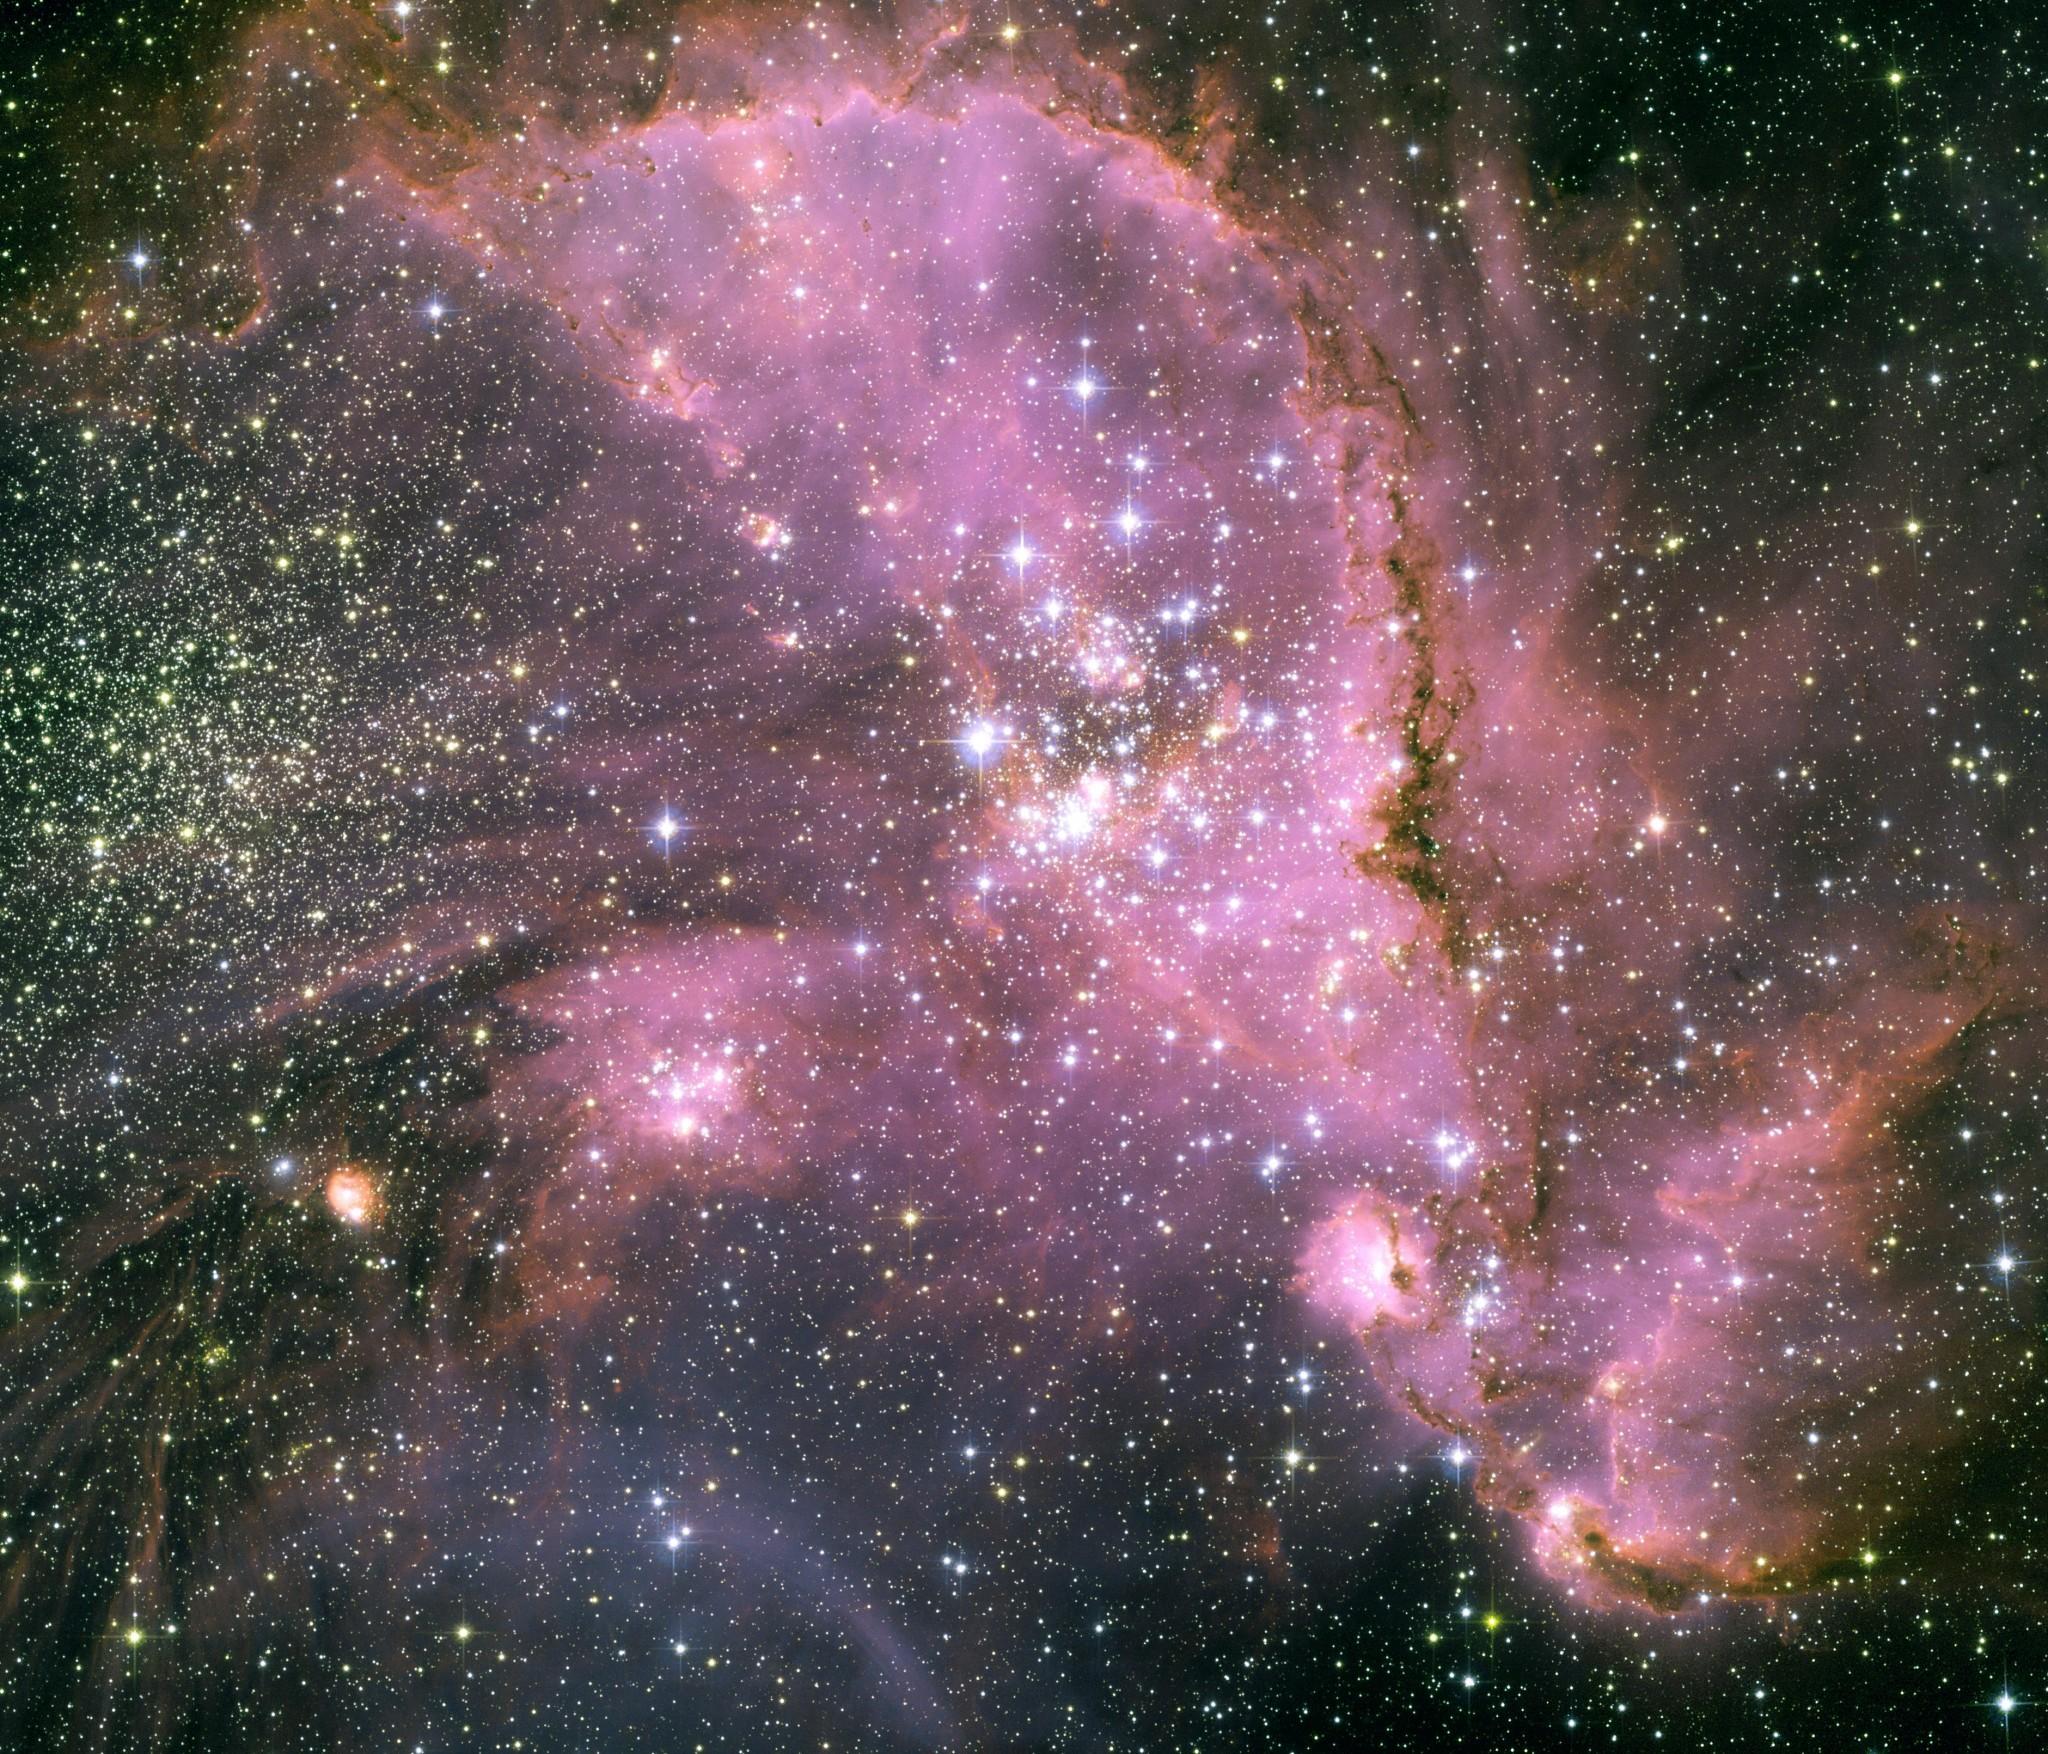 تجويف سديمي يمتدّ بلون وردي ويحوي العديد من النجوم الساطعة بينما تتناثر نجوم كثيرة أخرى على امتداد الصورة